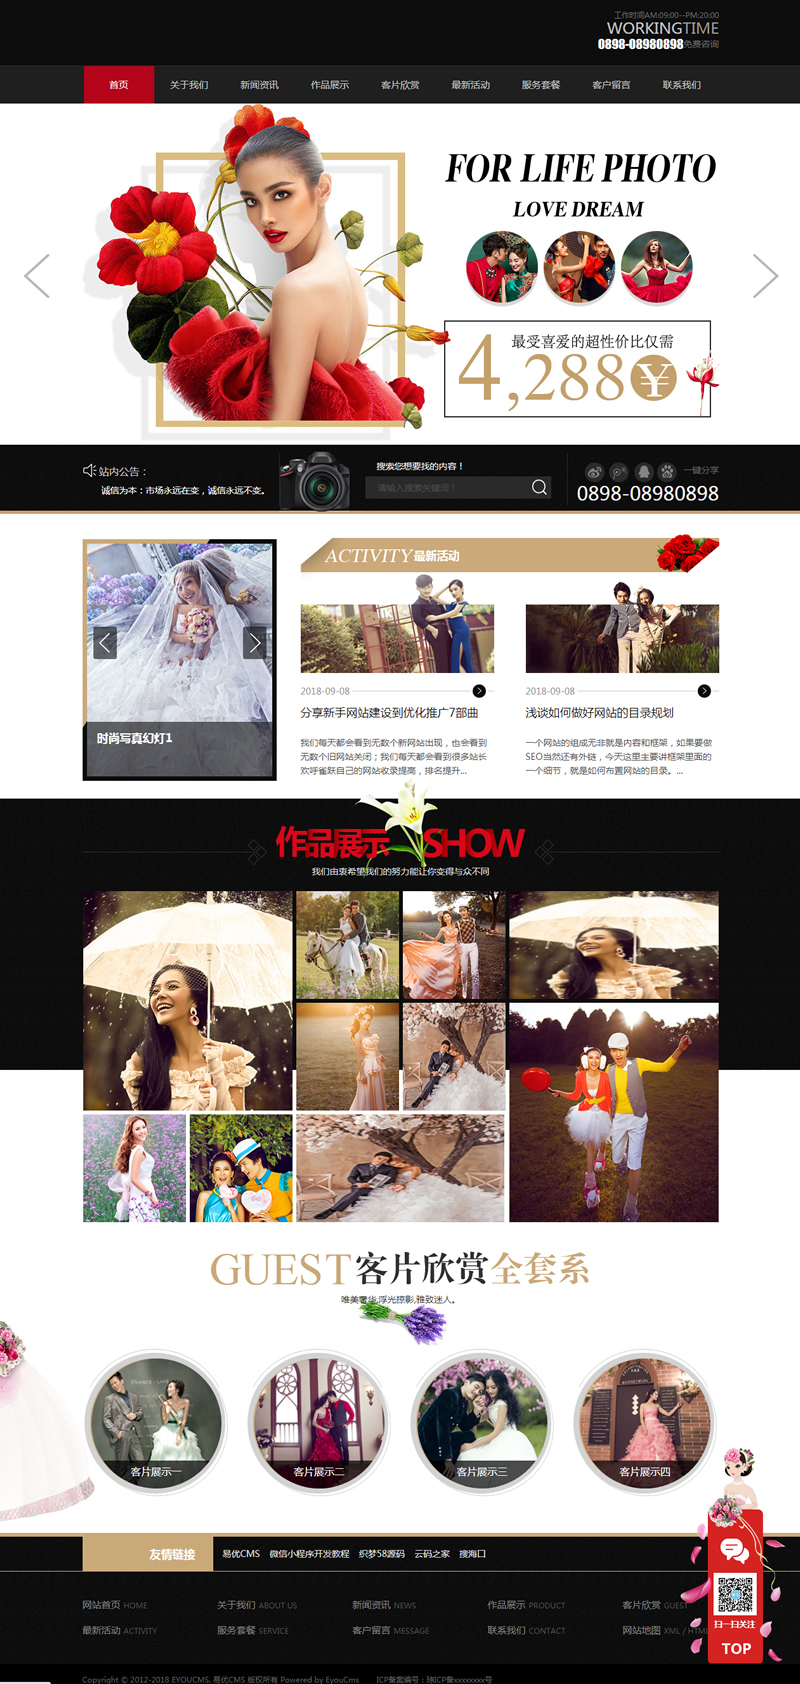 相应式时髦婚纱写真设计工作室网站源码易优CMS模板-ss-零度空间